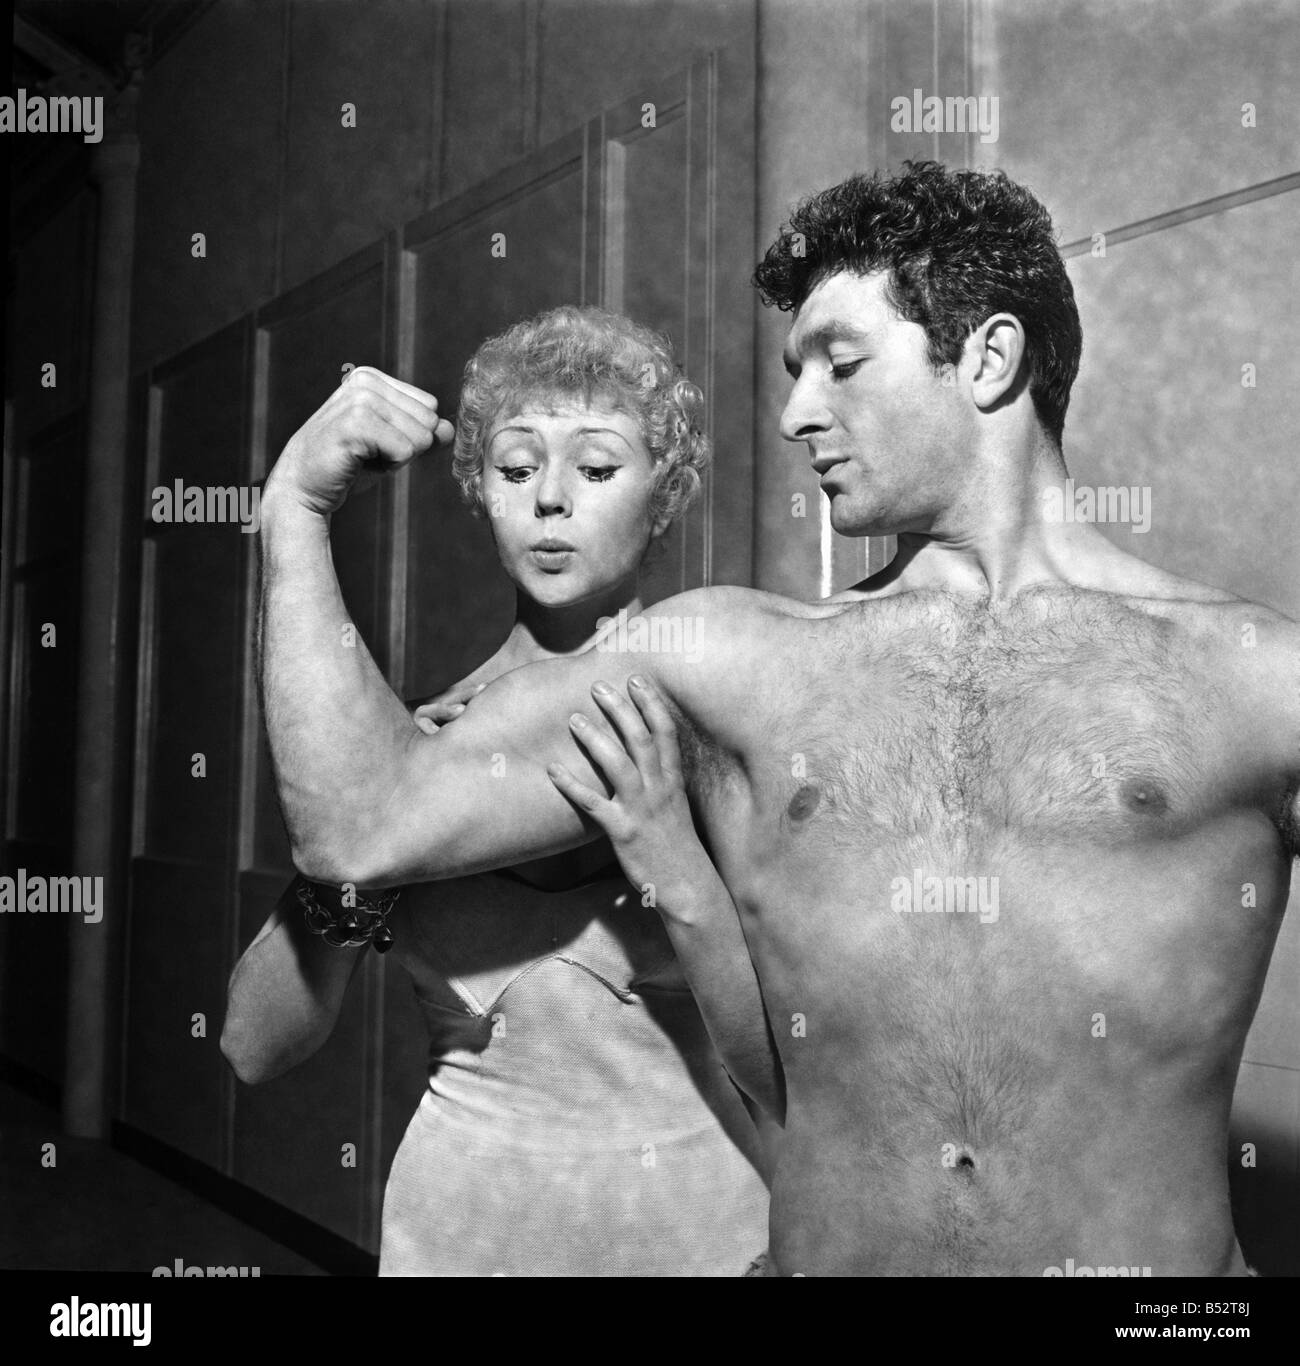 Homme fort de Télévision Arthur Mason montrant de ses muscles pour petite amie Vera jour&# 13 ;&# 10;Octobre 1952 &# 13 ;&# 10;AS5311 C Banque D'Images